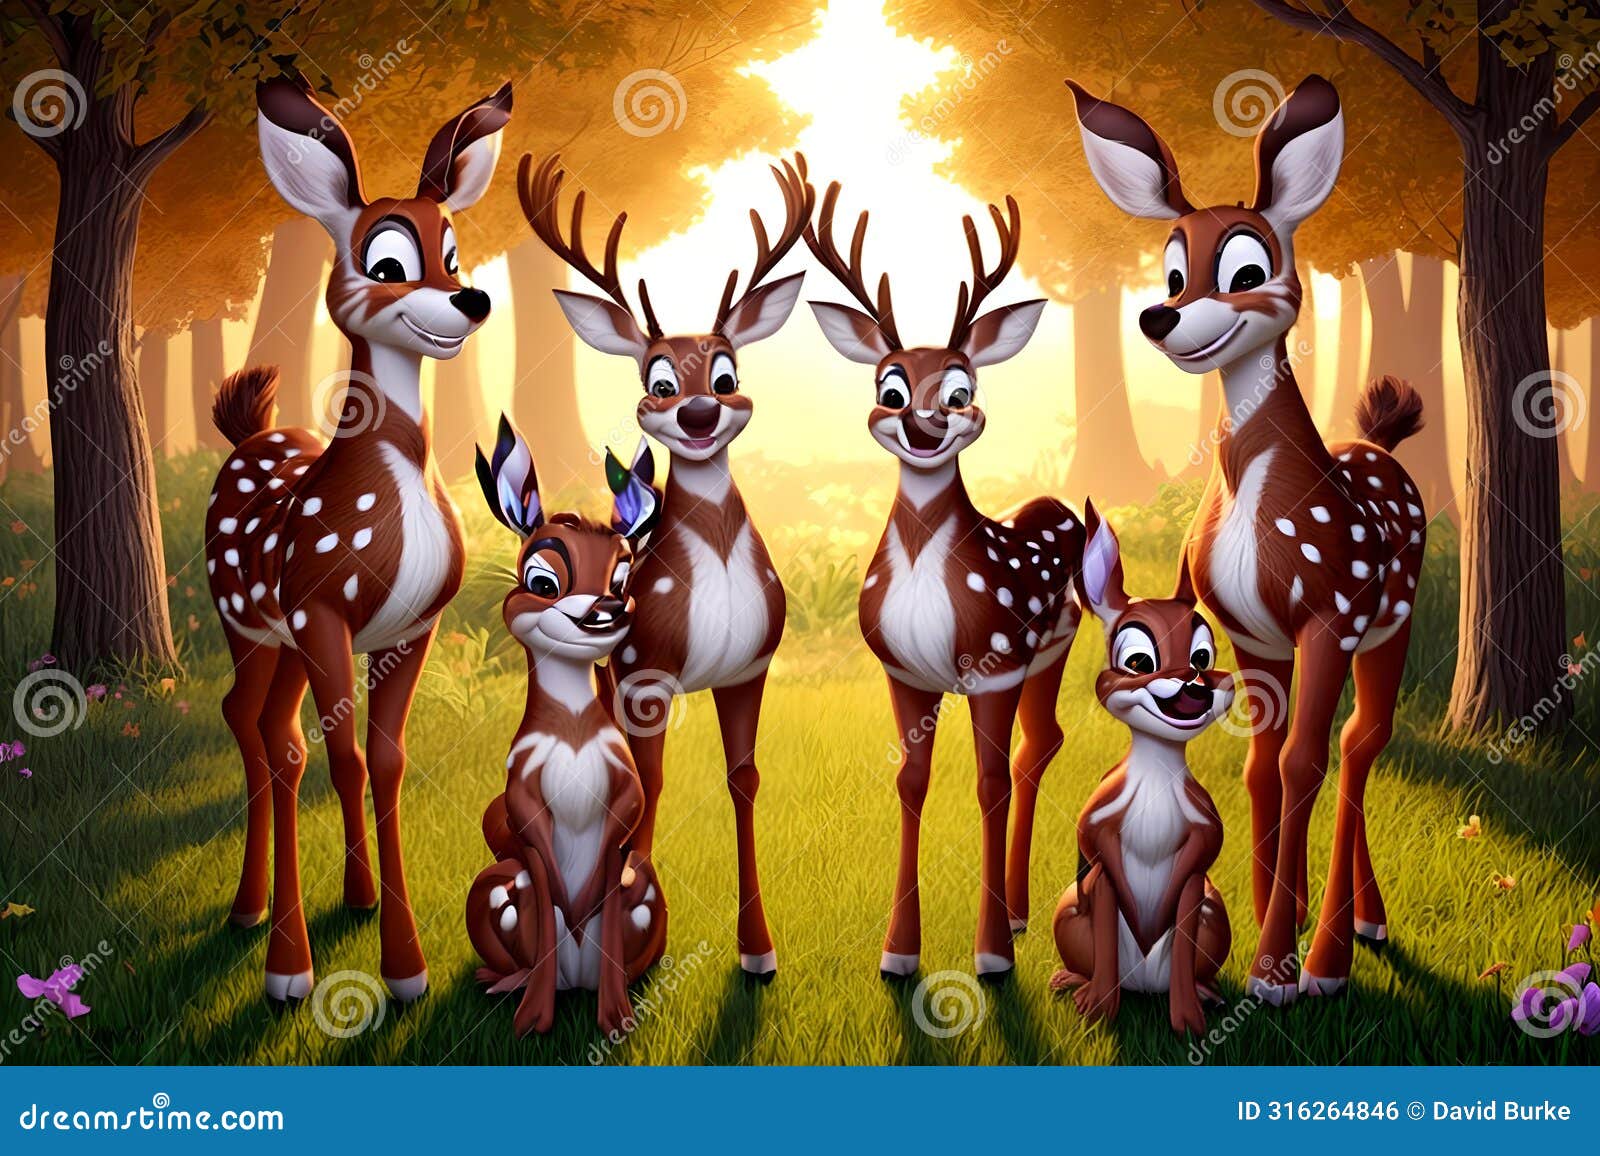 cartoon comic smile spotted red deer herd forest backlit natural habitat